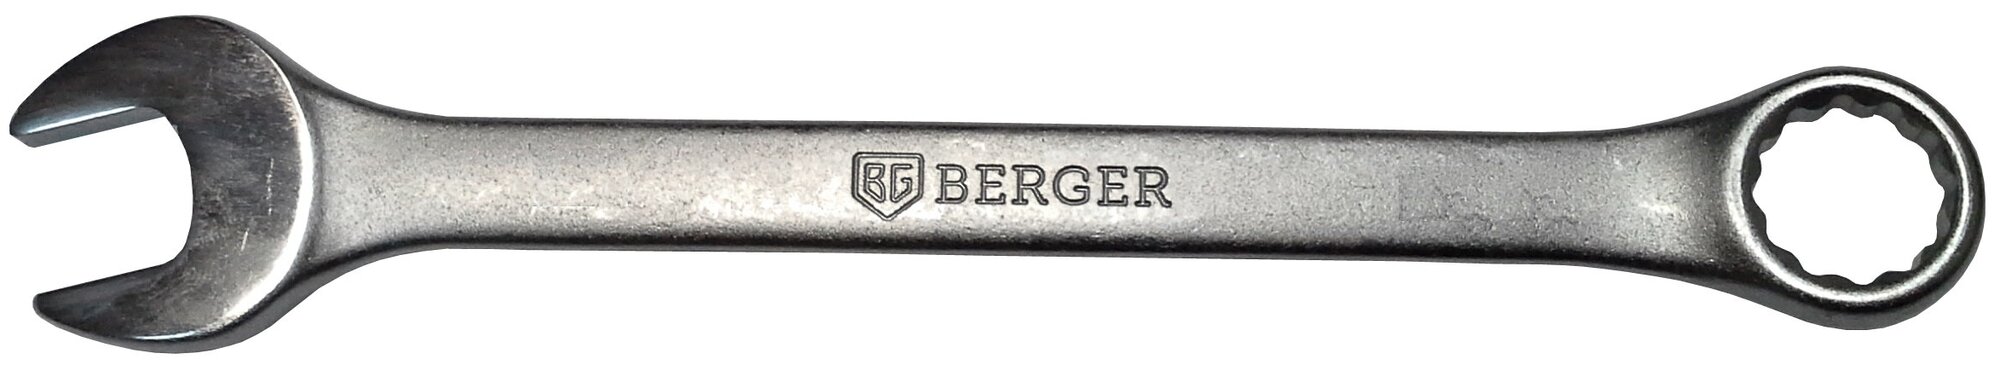 Комбинированные ключи Berger BG - фото №1